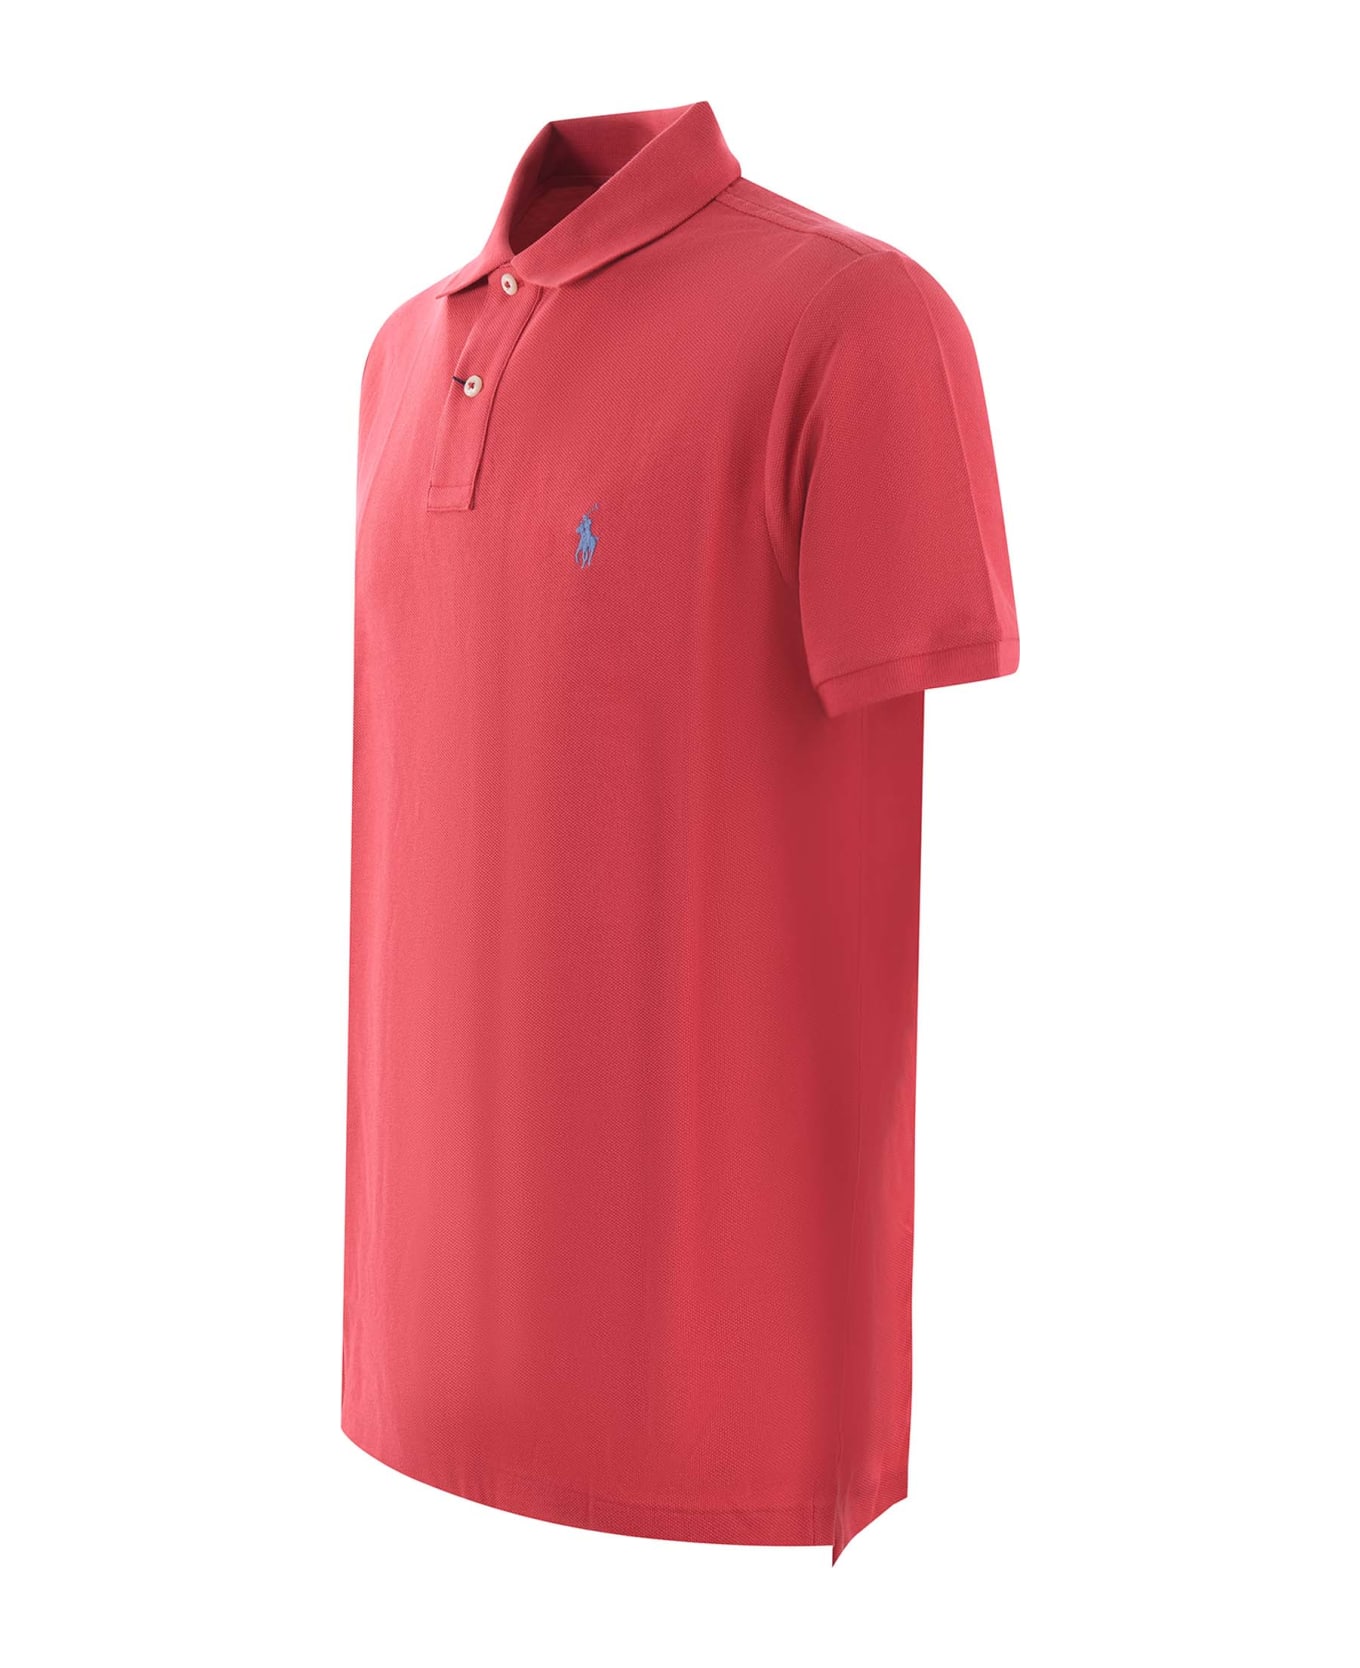 Polo Ralph Lauren "polo Ralph Lauren" Polo Shirt - Rosso corallo